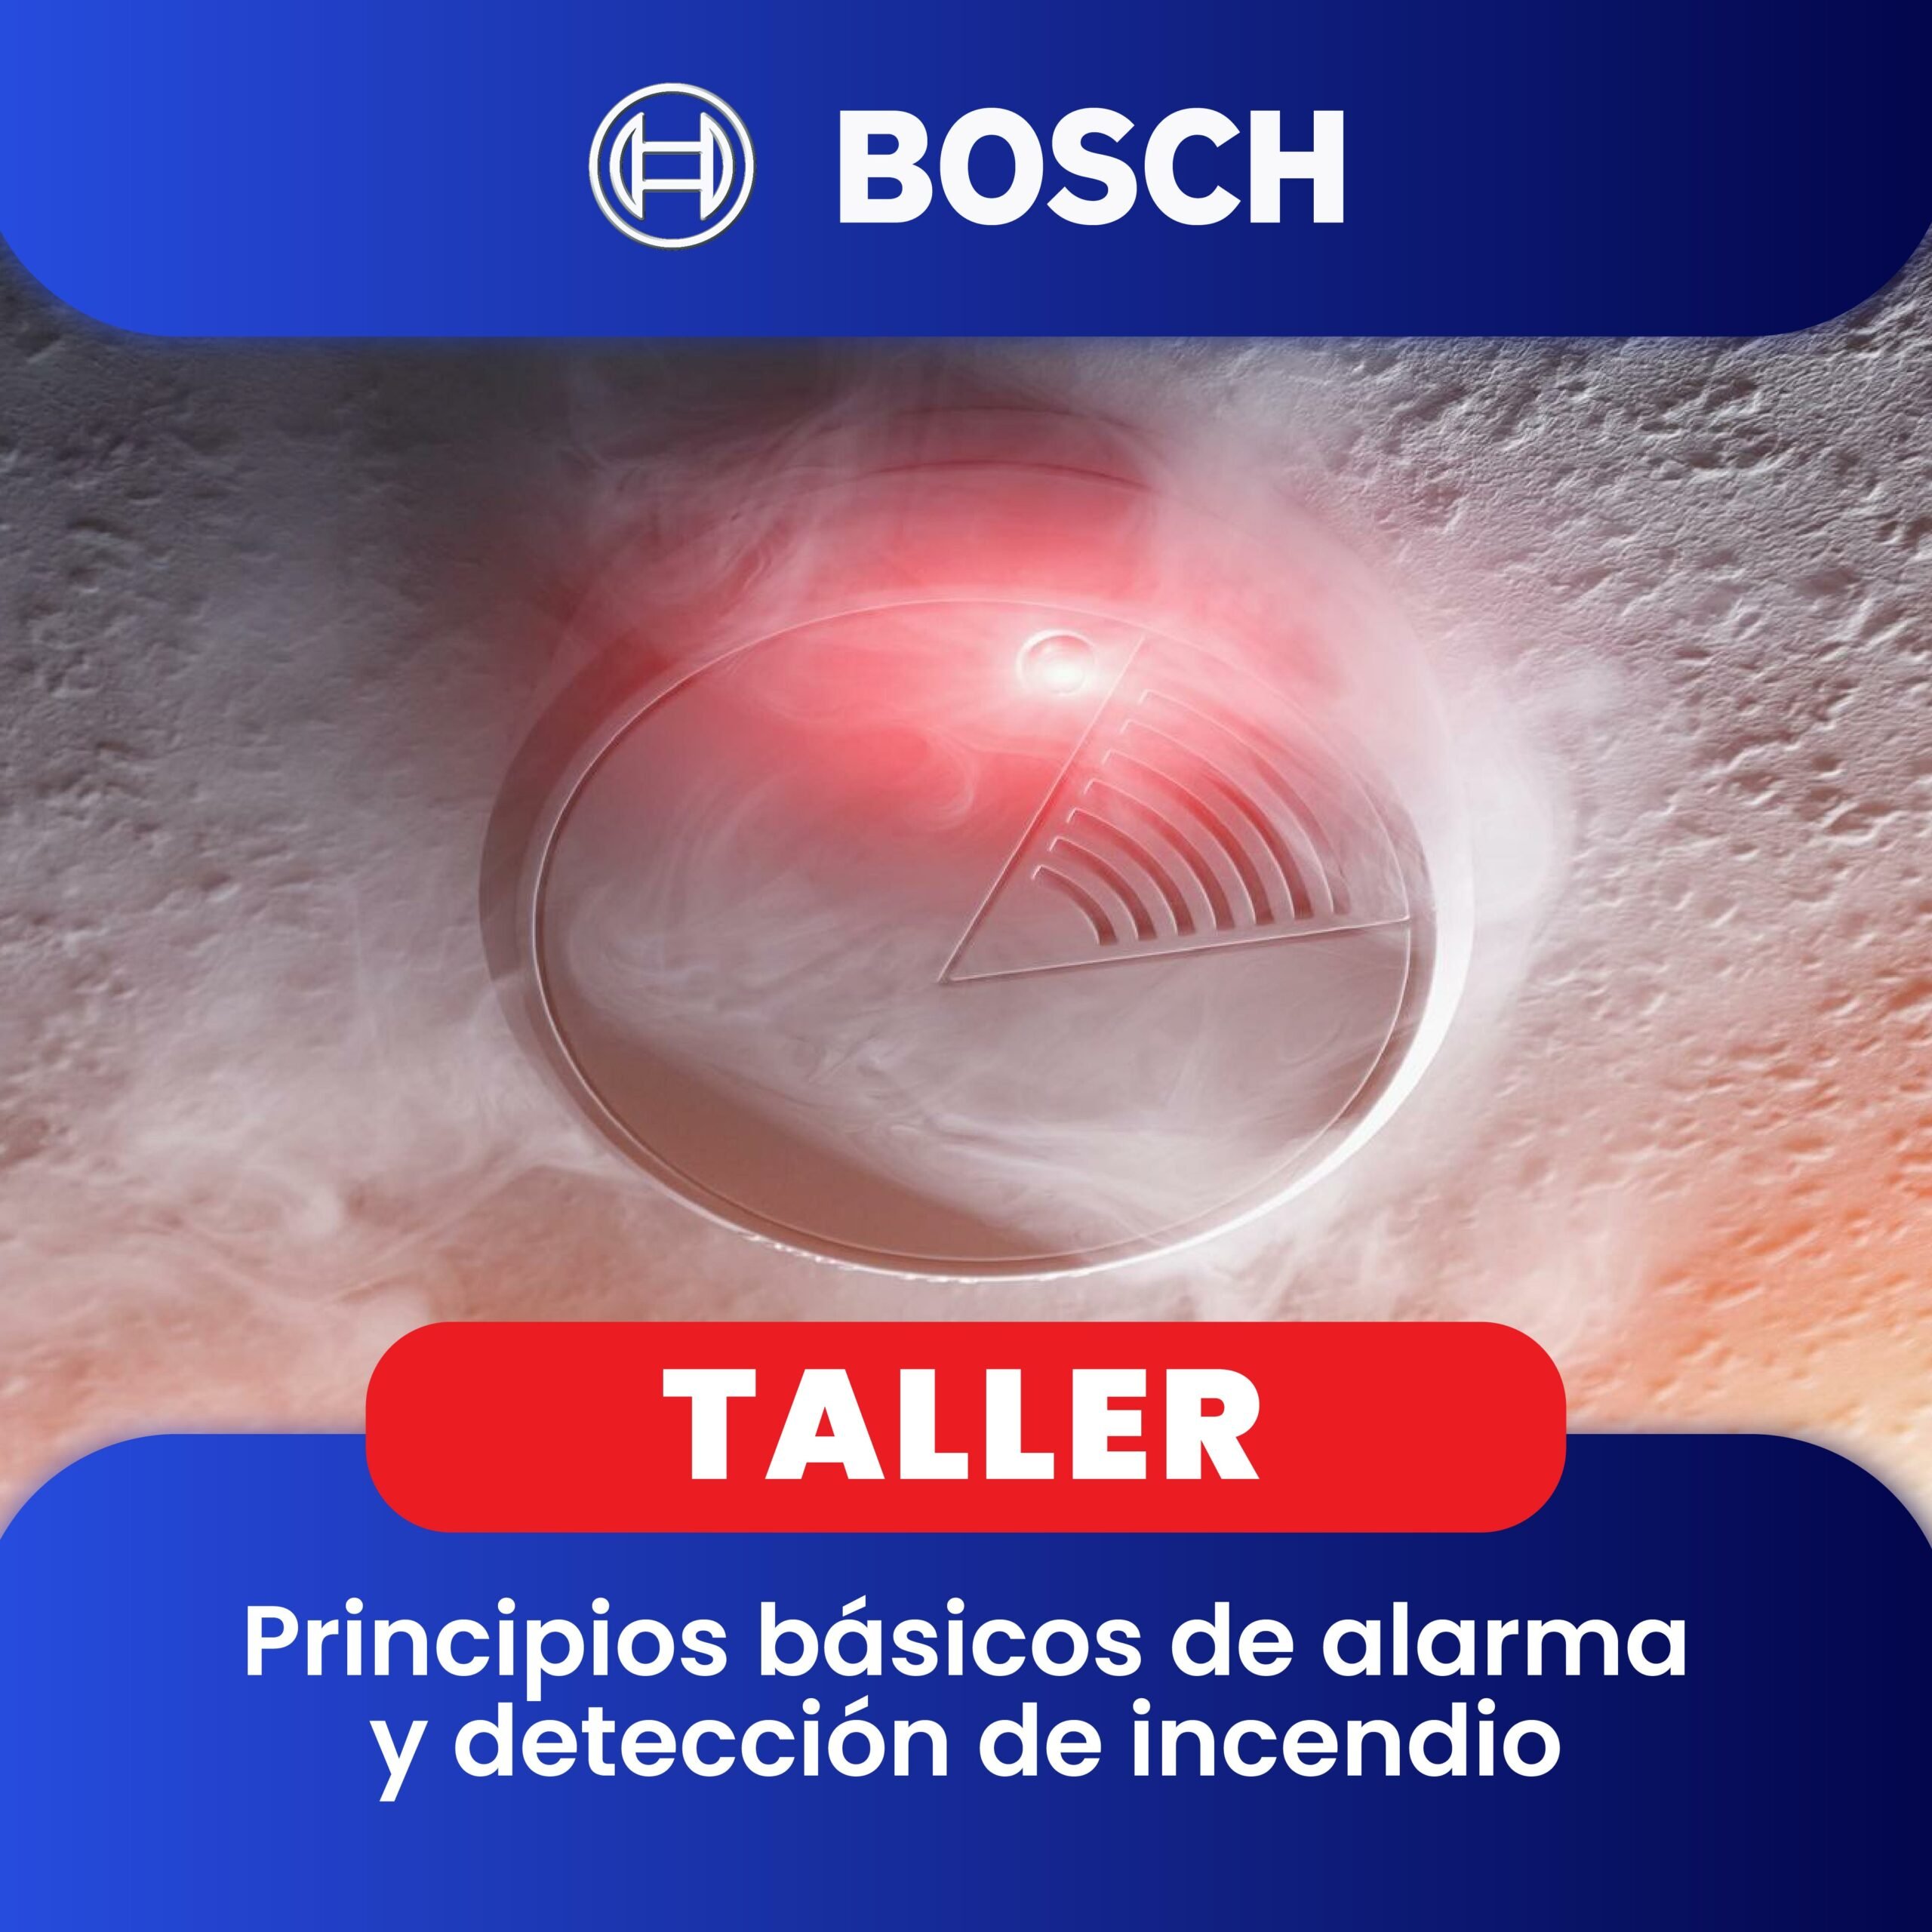 BOSCH: Taller Principios básicos de alarma y detección de incendio (1 día)